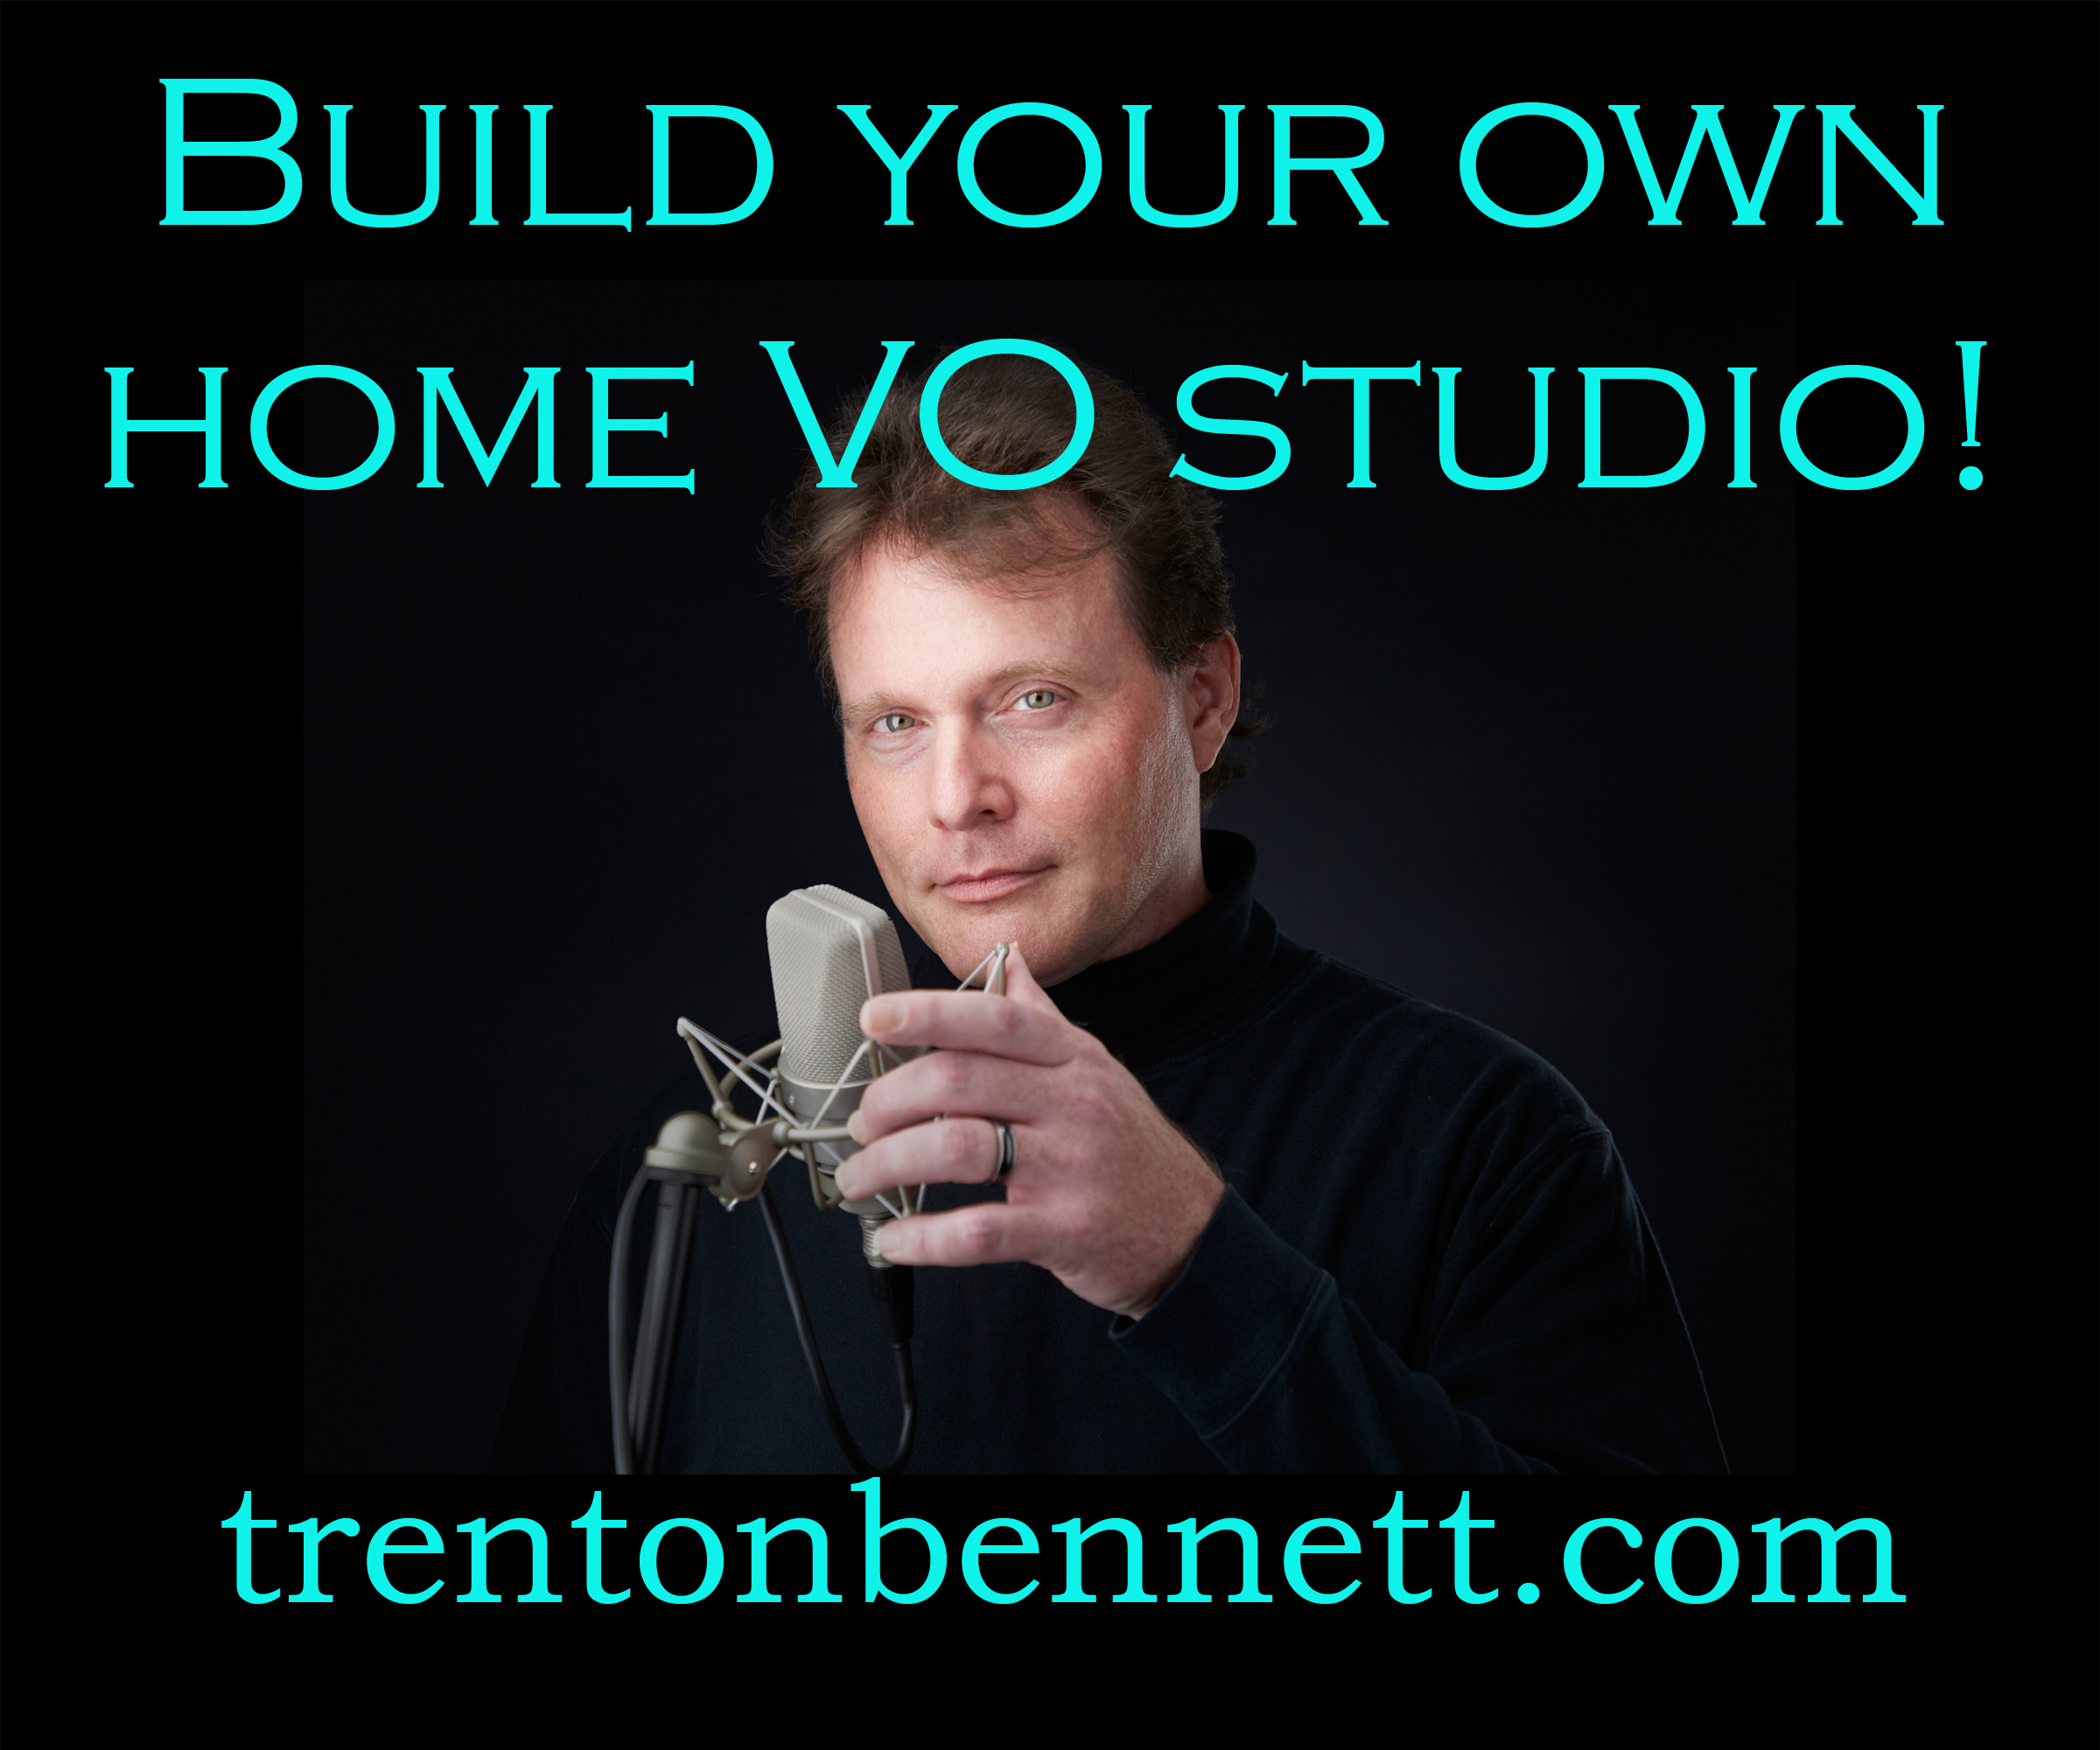 Trenton Bennett Home VO Studio Build on YouTube (video)